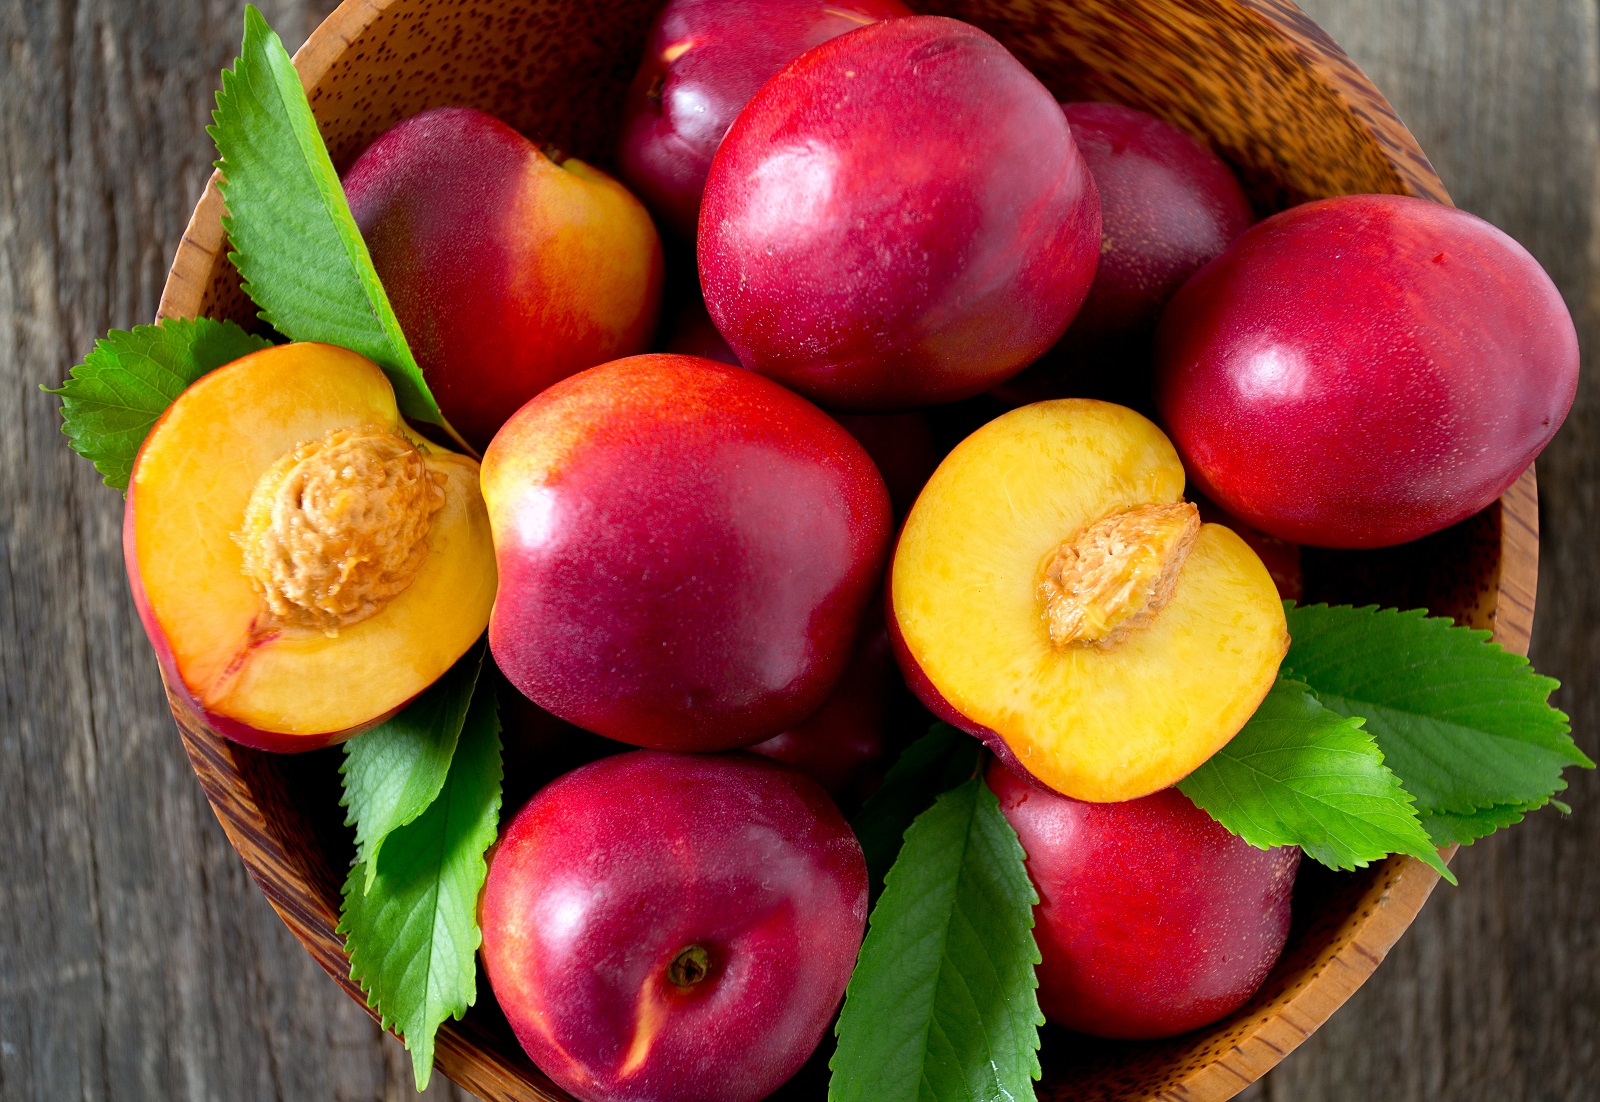 Les fruits contiennent de grandes quantités de fructose. © Diana Taliun, Adobe Stock